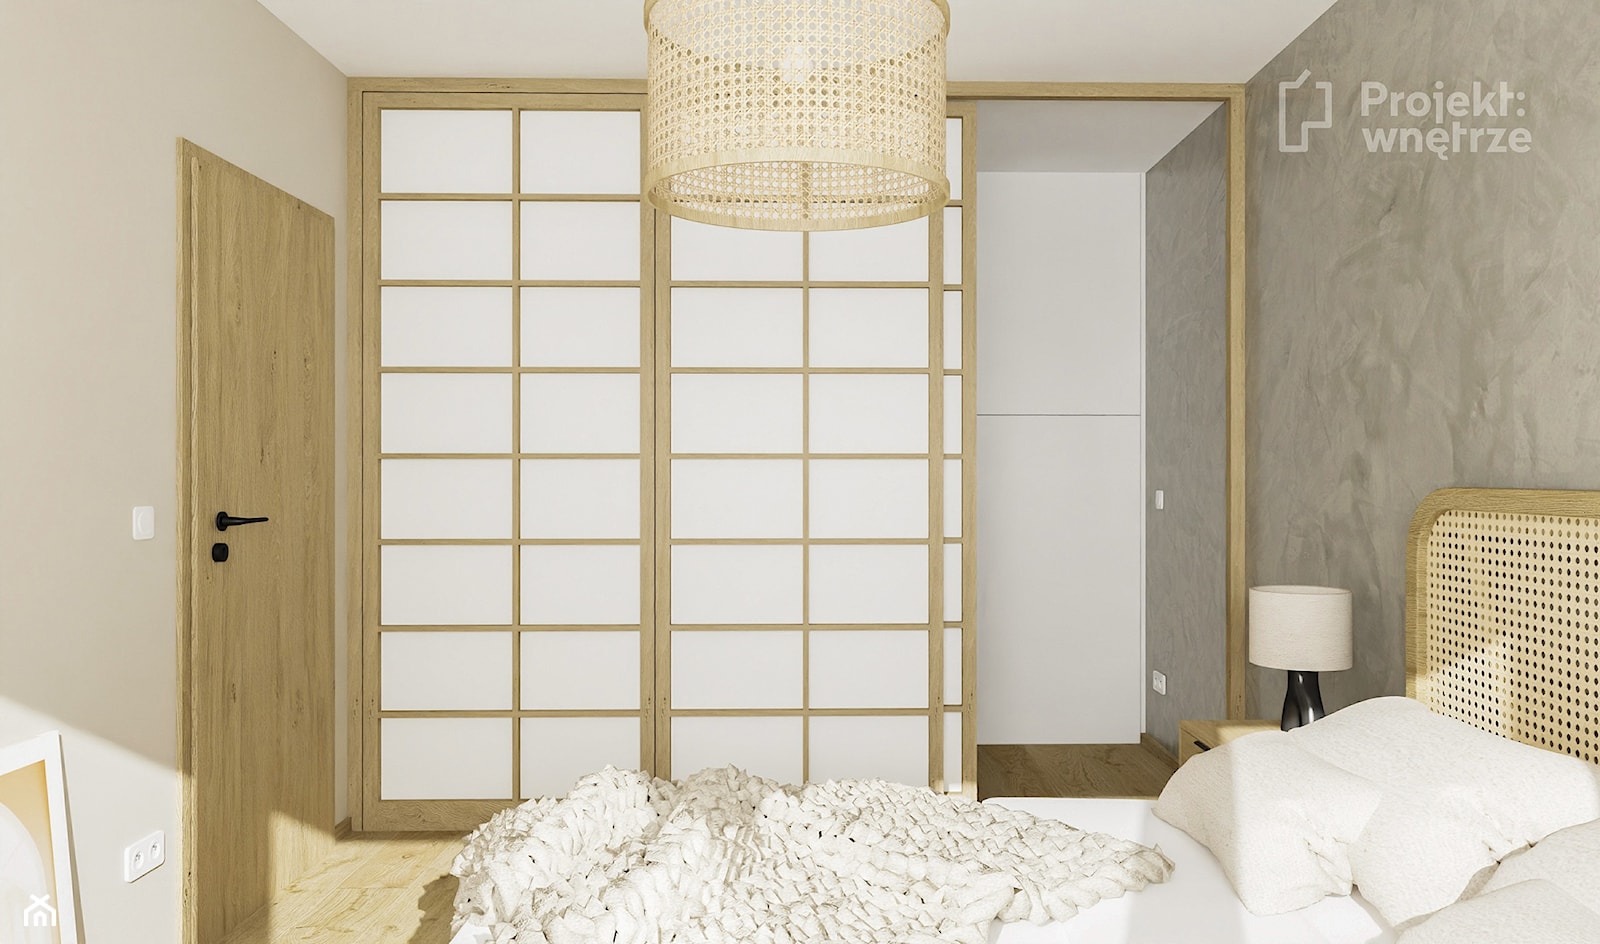 Sypialnia szara japandi z szafą lustrem garderobą szafkami mała PROJEKT: WNĘTRZE - 2 wersje - zdjęcie od PROJEKT: WNĘTRZE - Homebook